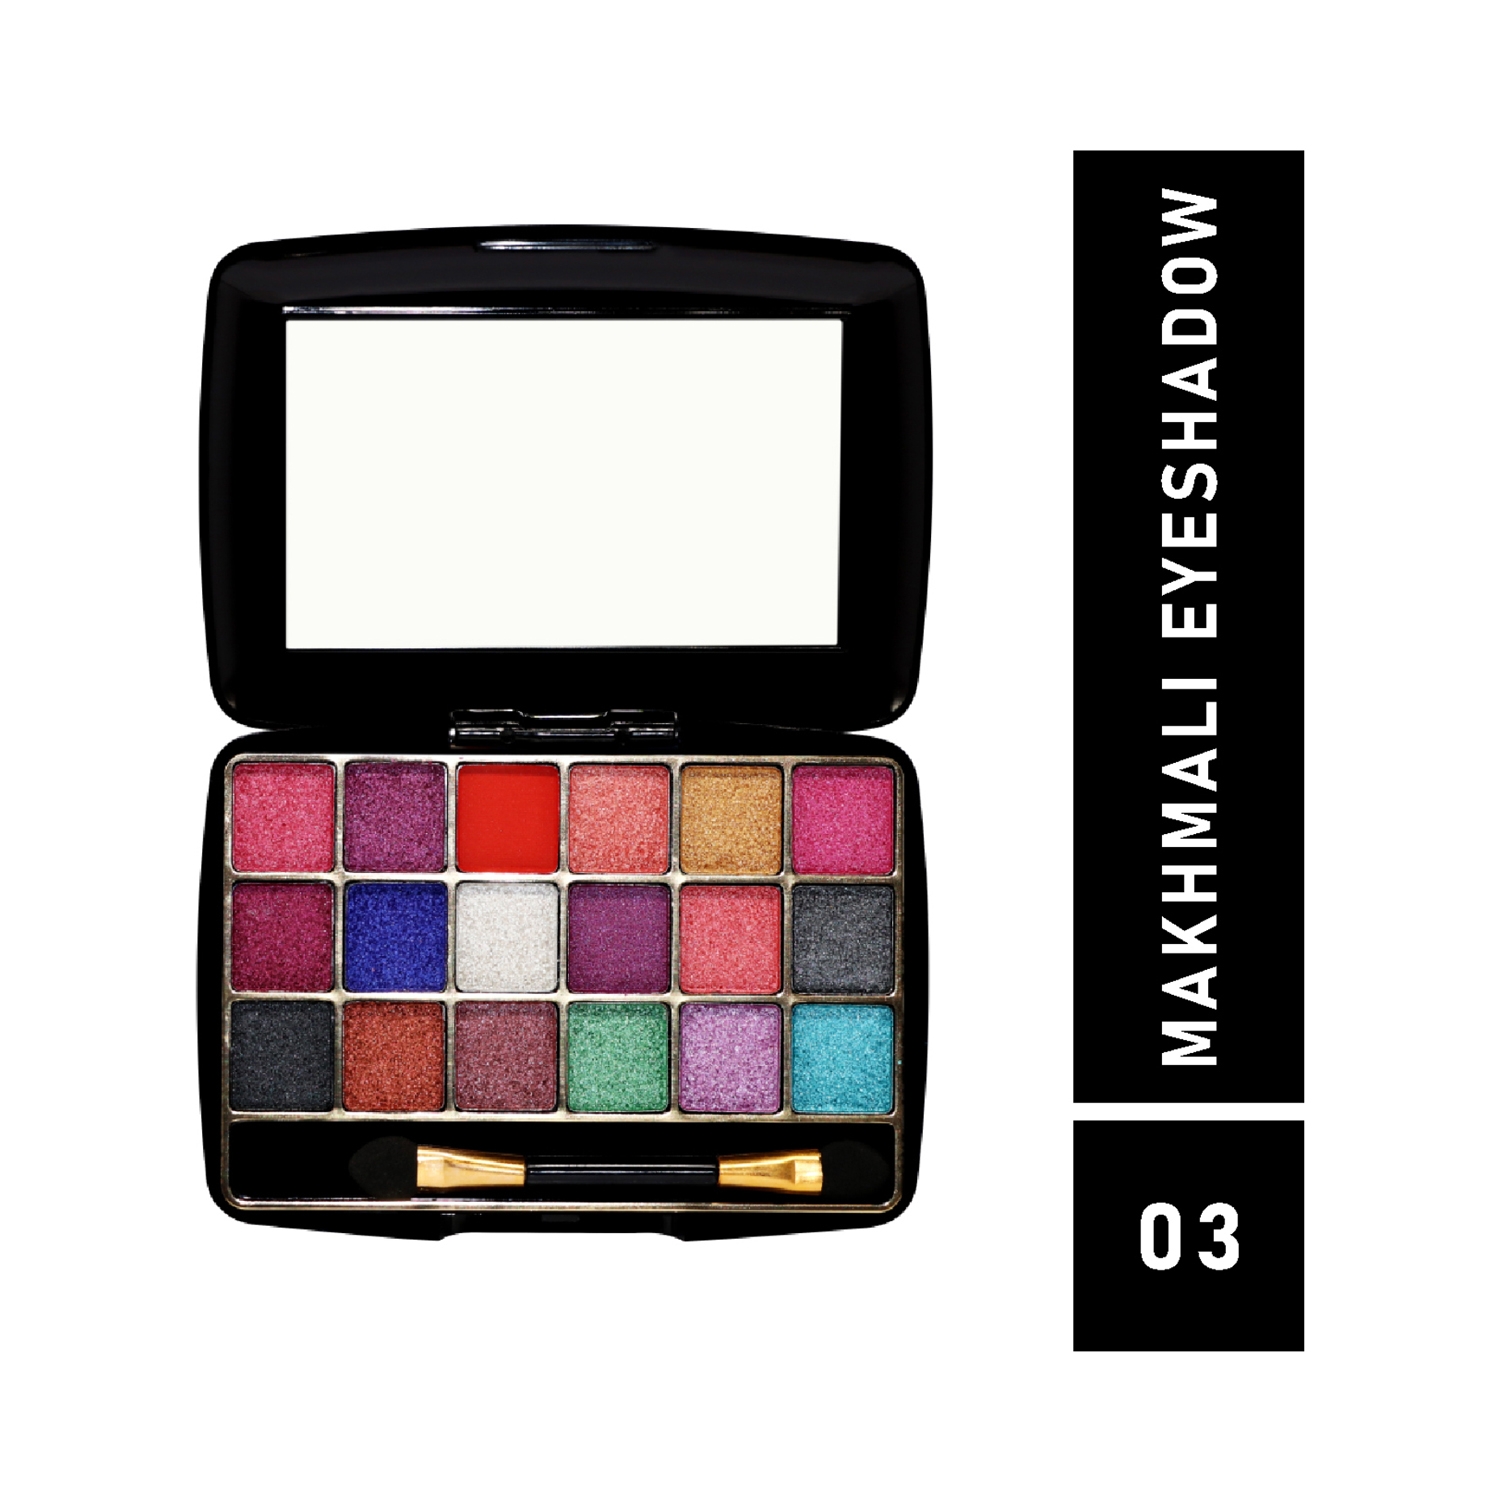 Half N Half | Half N Half 18 Colors Makhmali Eyeshadow With Brush In Makeup Palette - 03 Shade (12.8g)